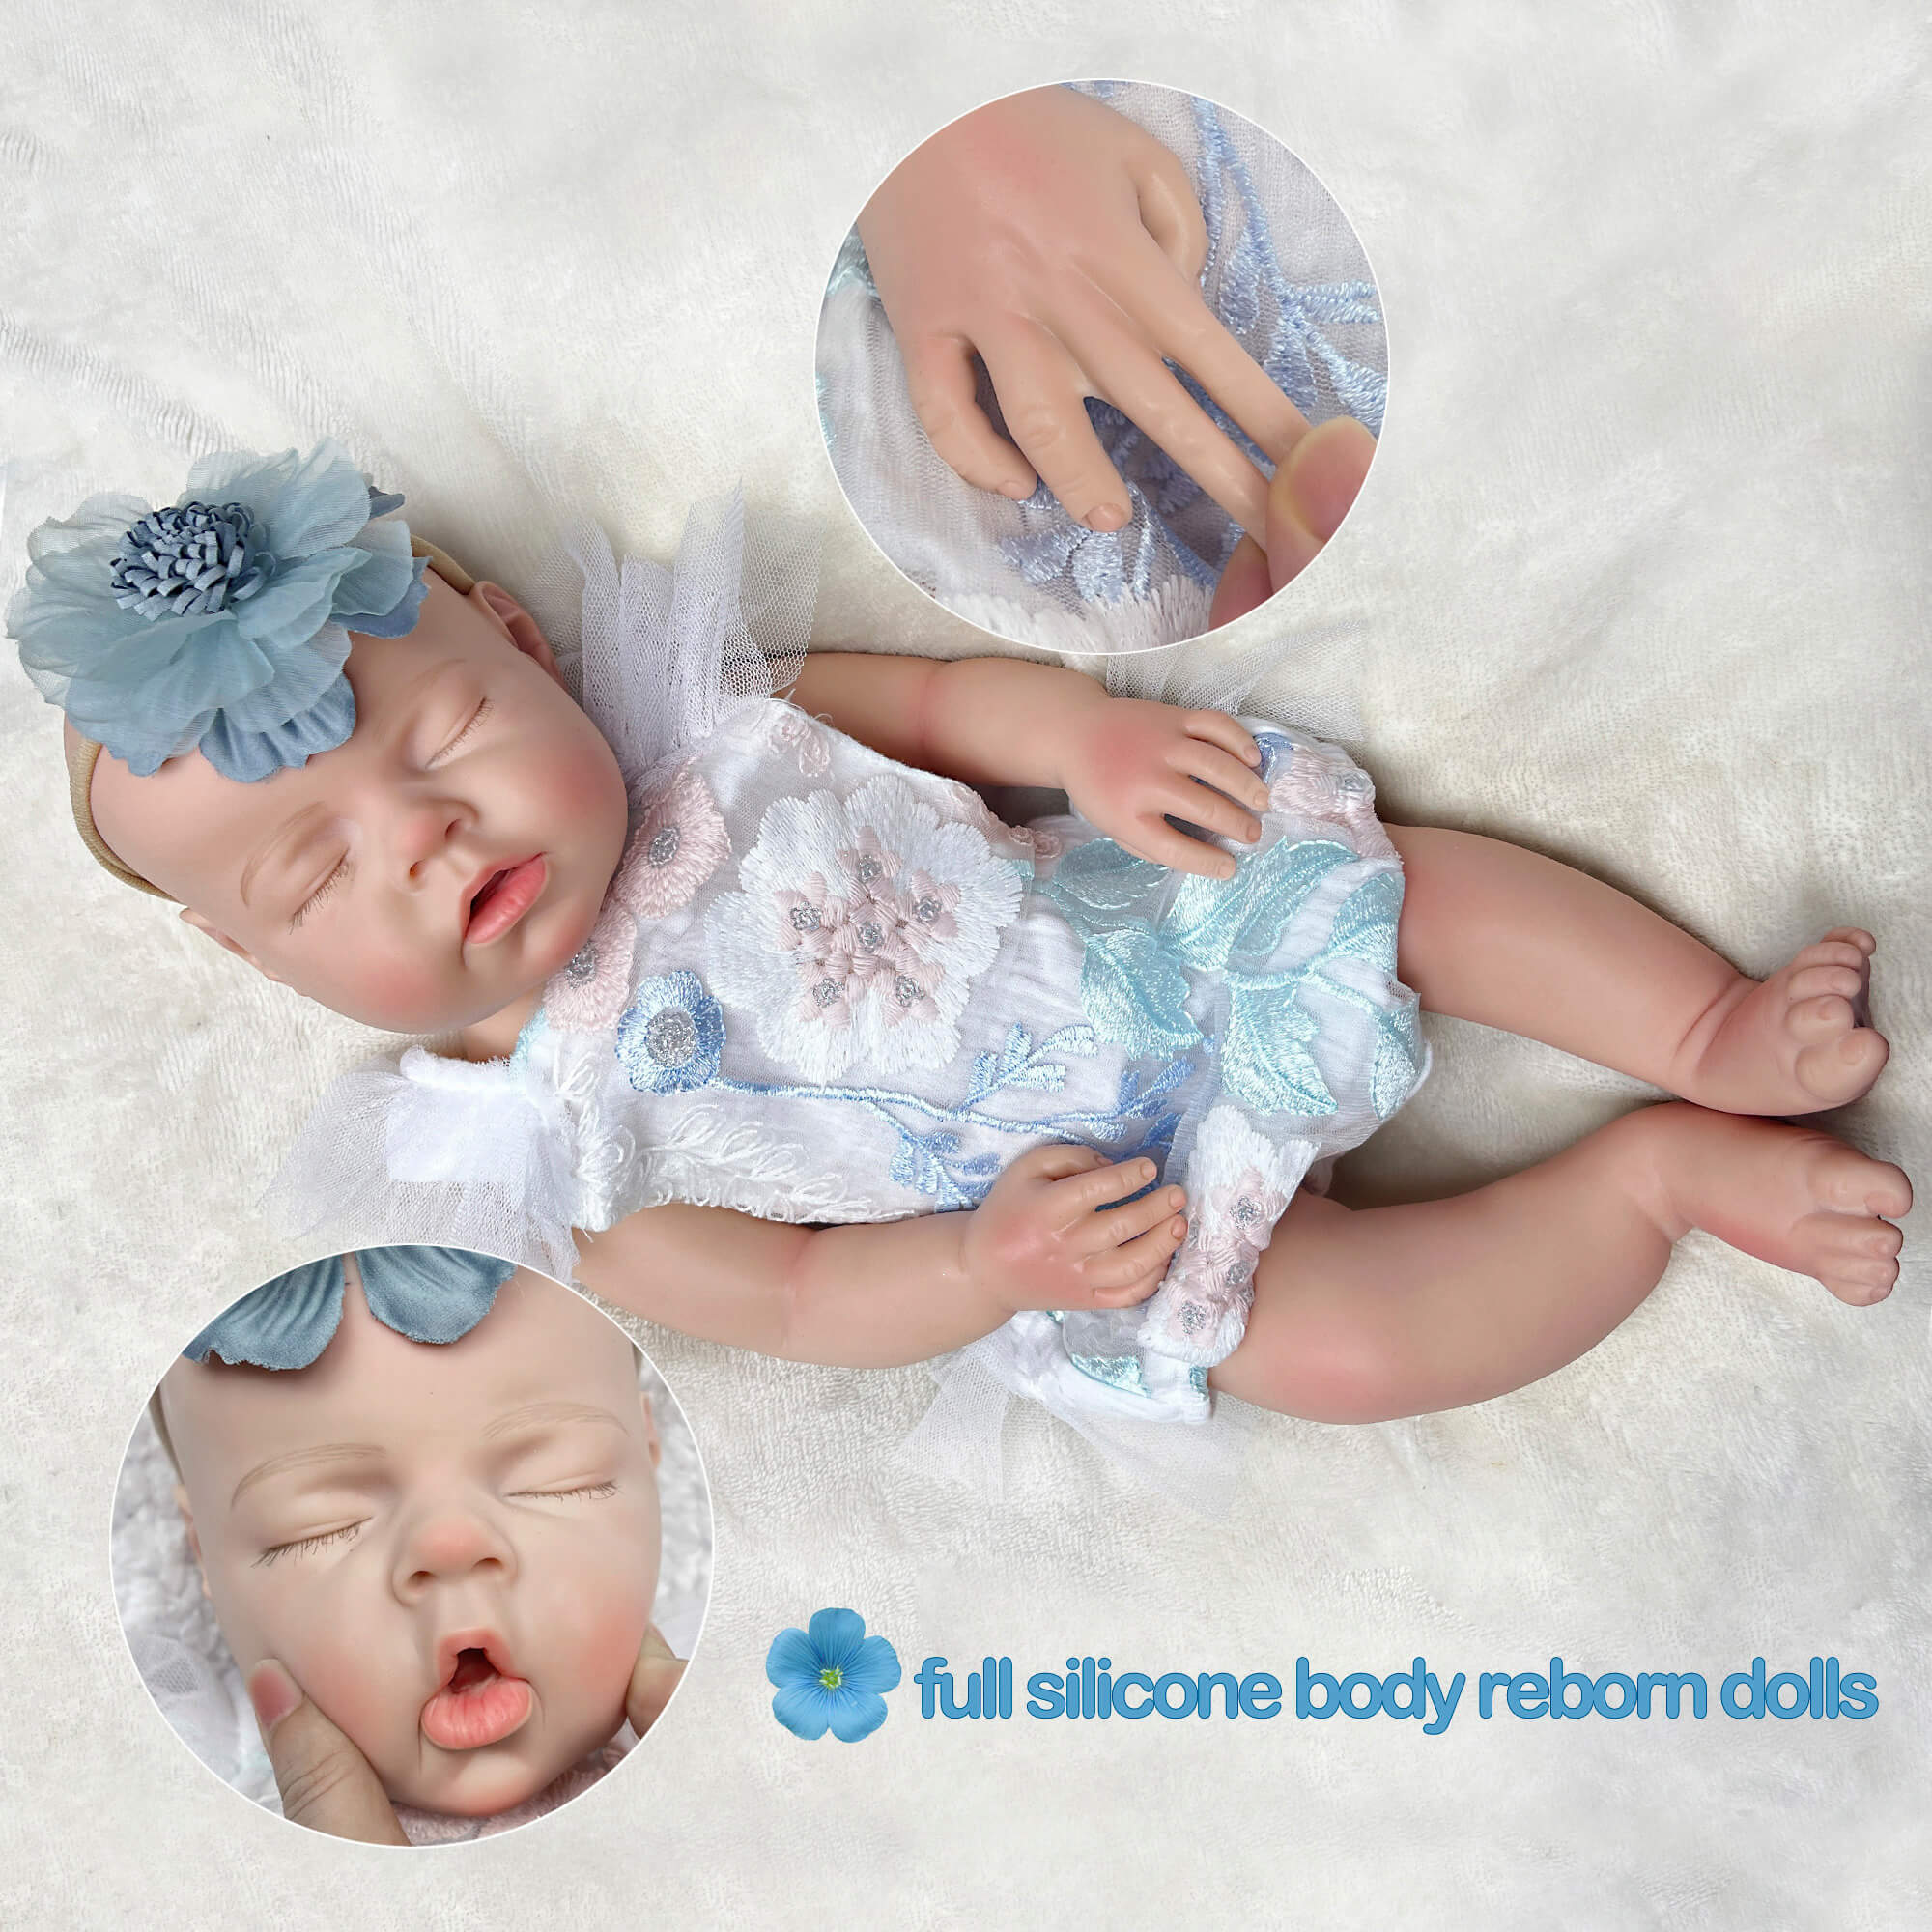 Drink System Doll 20 inch Realistic Newborn Baby Doll Girl